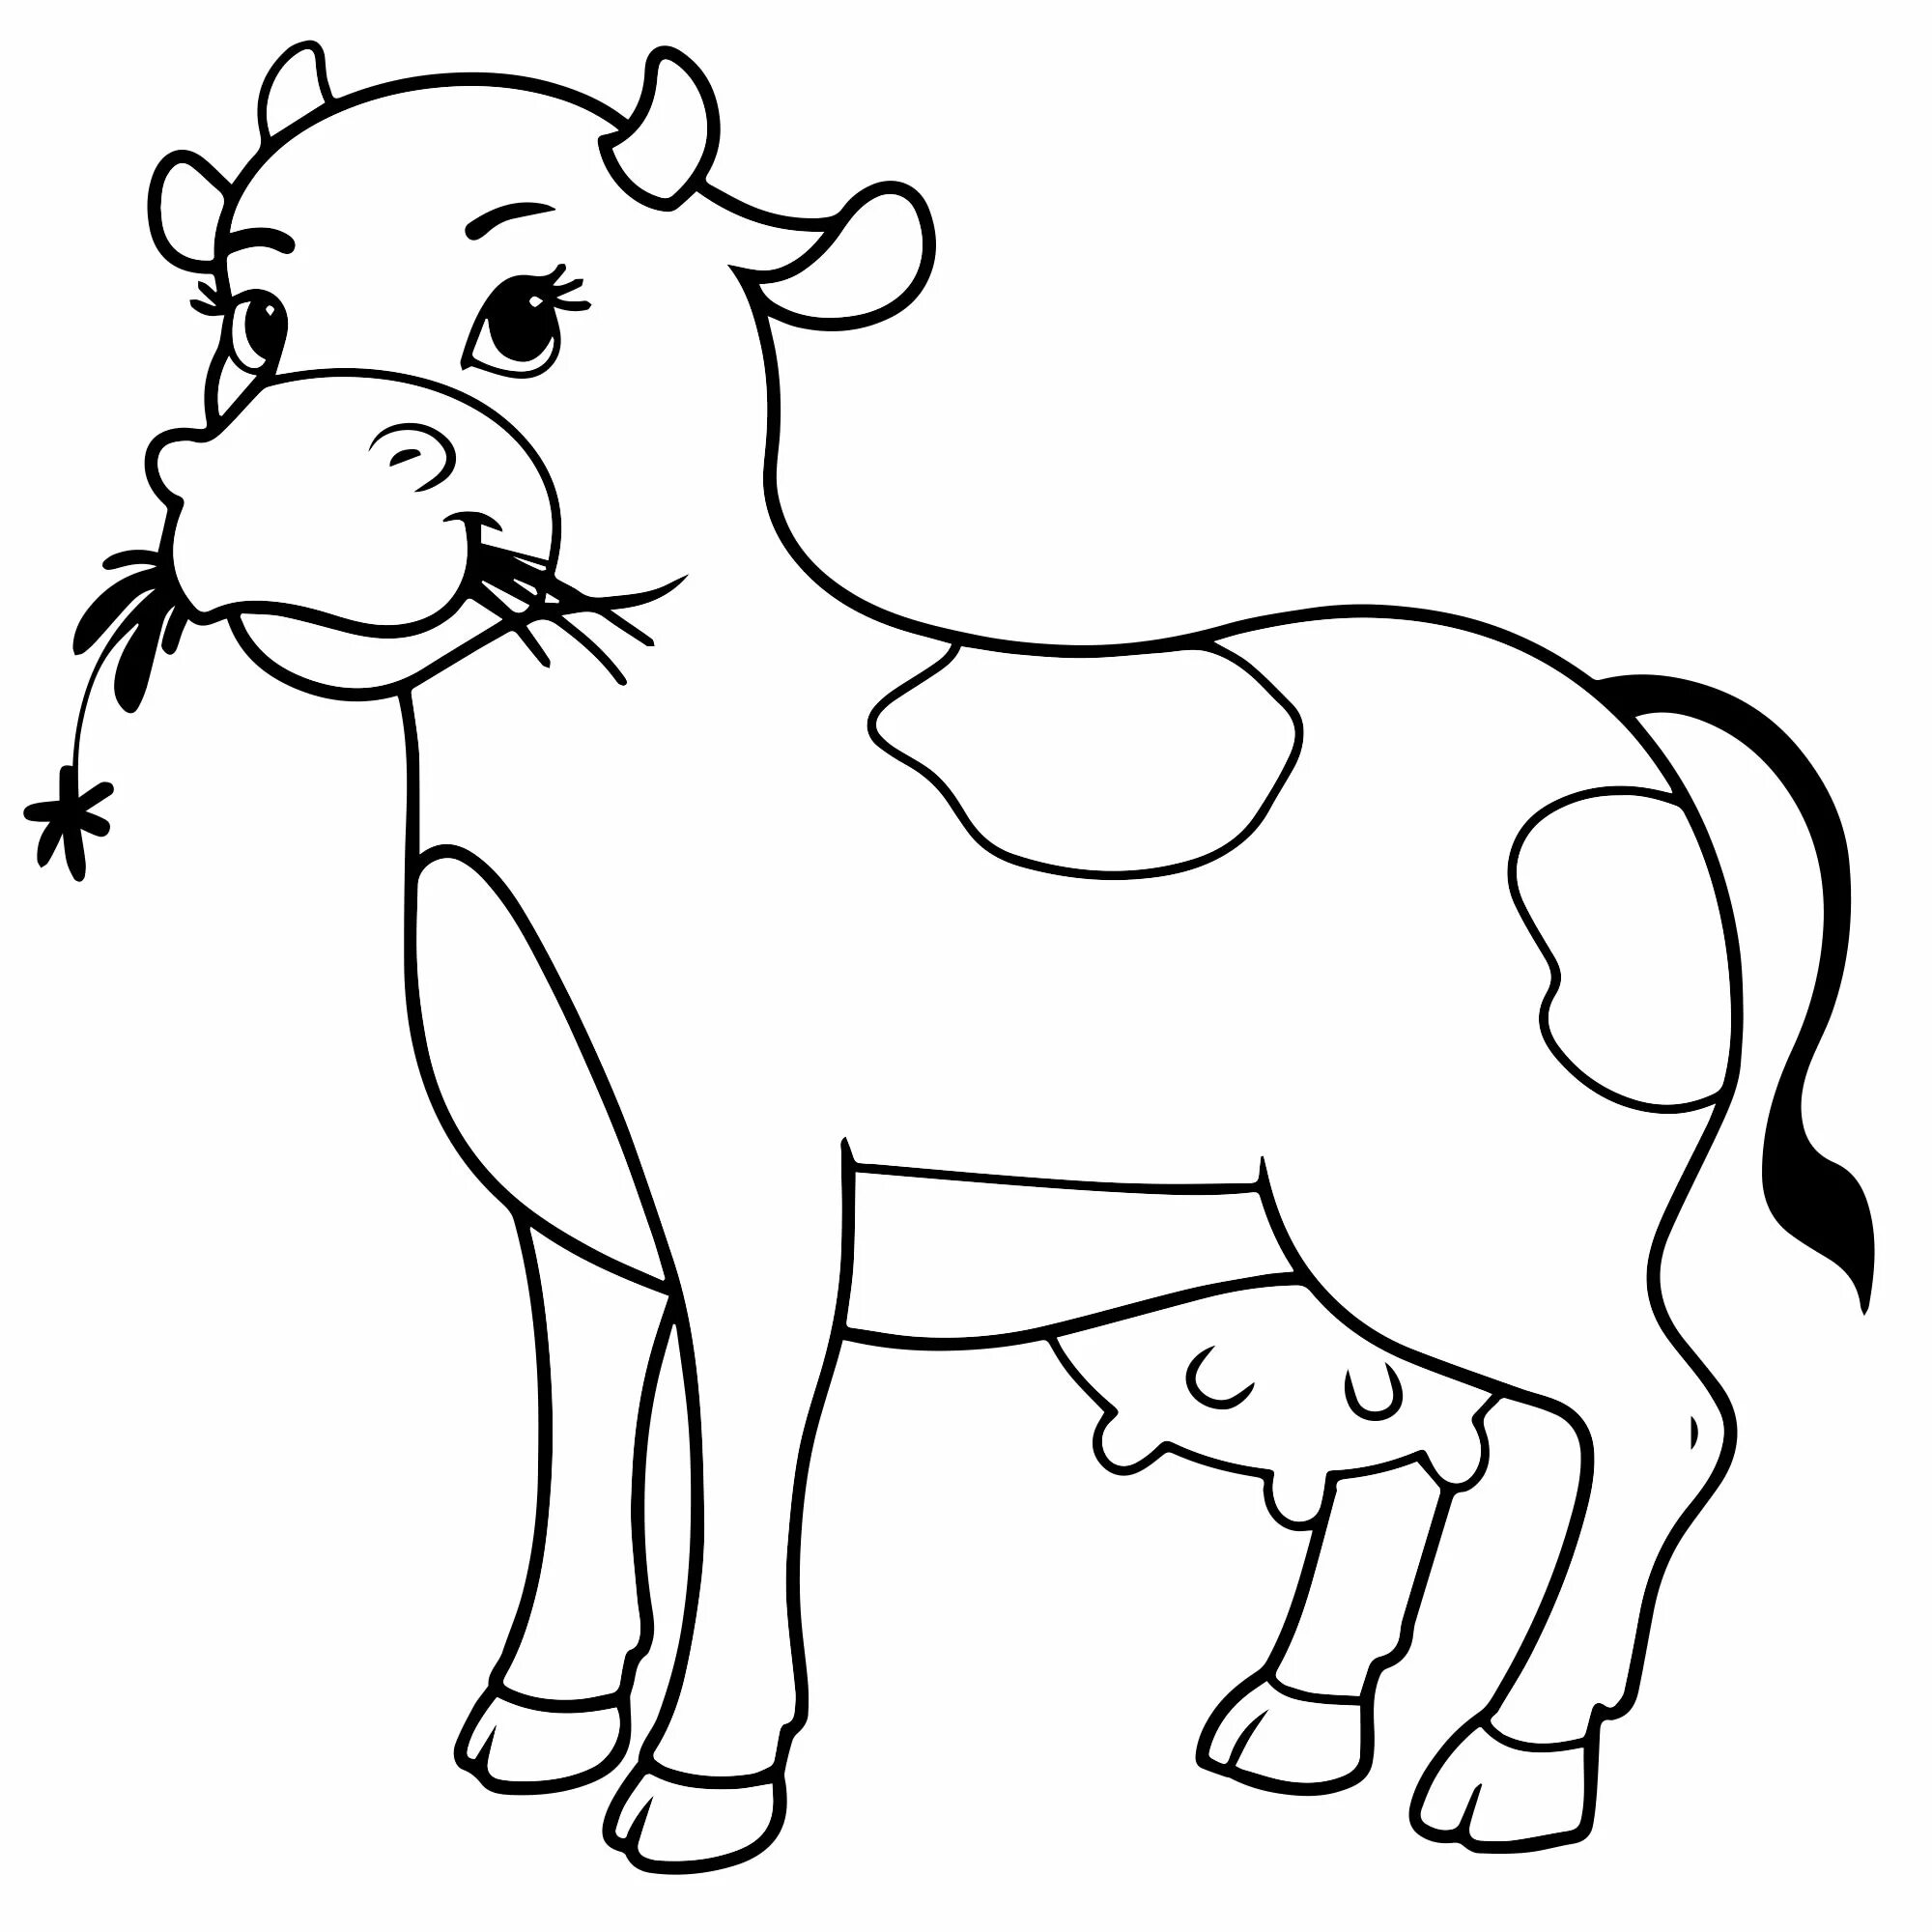 Раскраски для детей 3 года коровы. Раскраска корова. Раскраска домашние животные. Раскраски животные для детей. Корова картинка для детей раскраска.